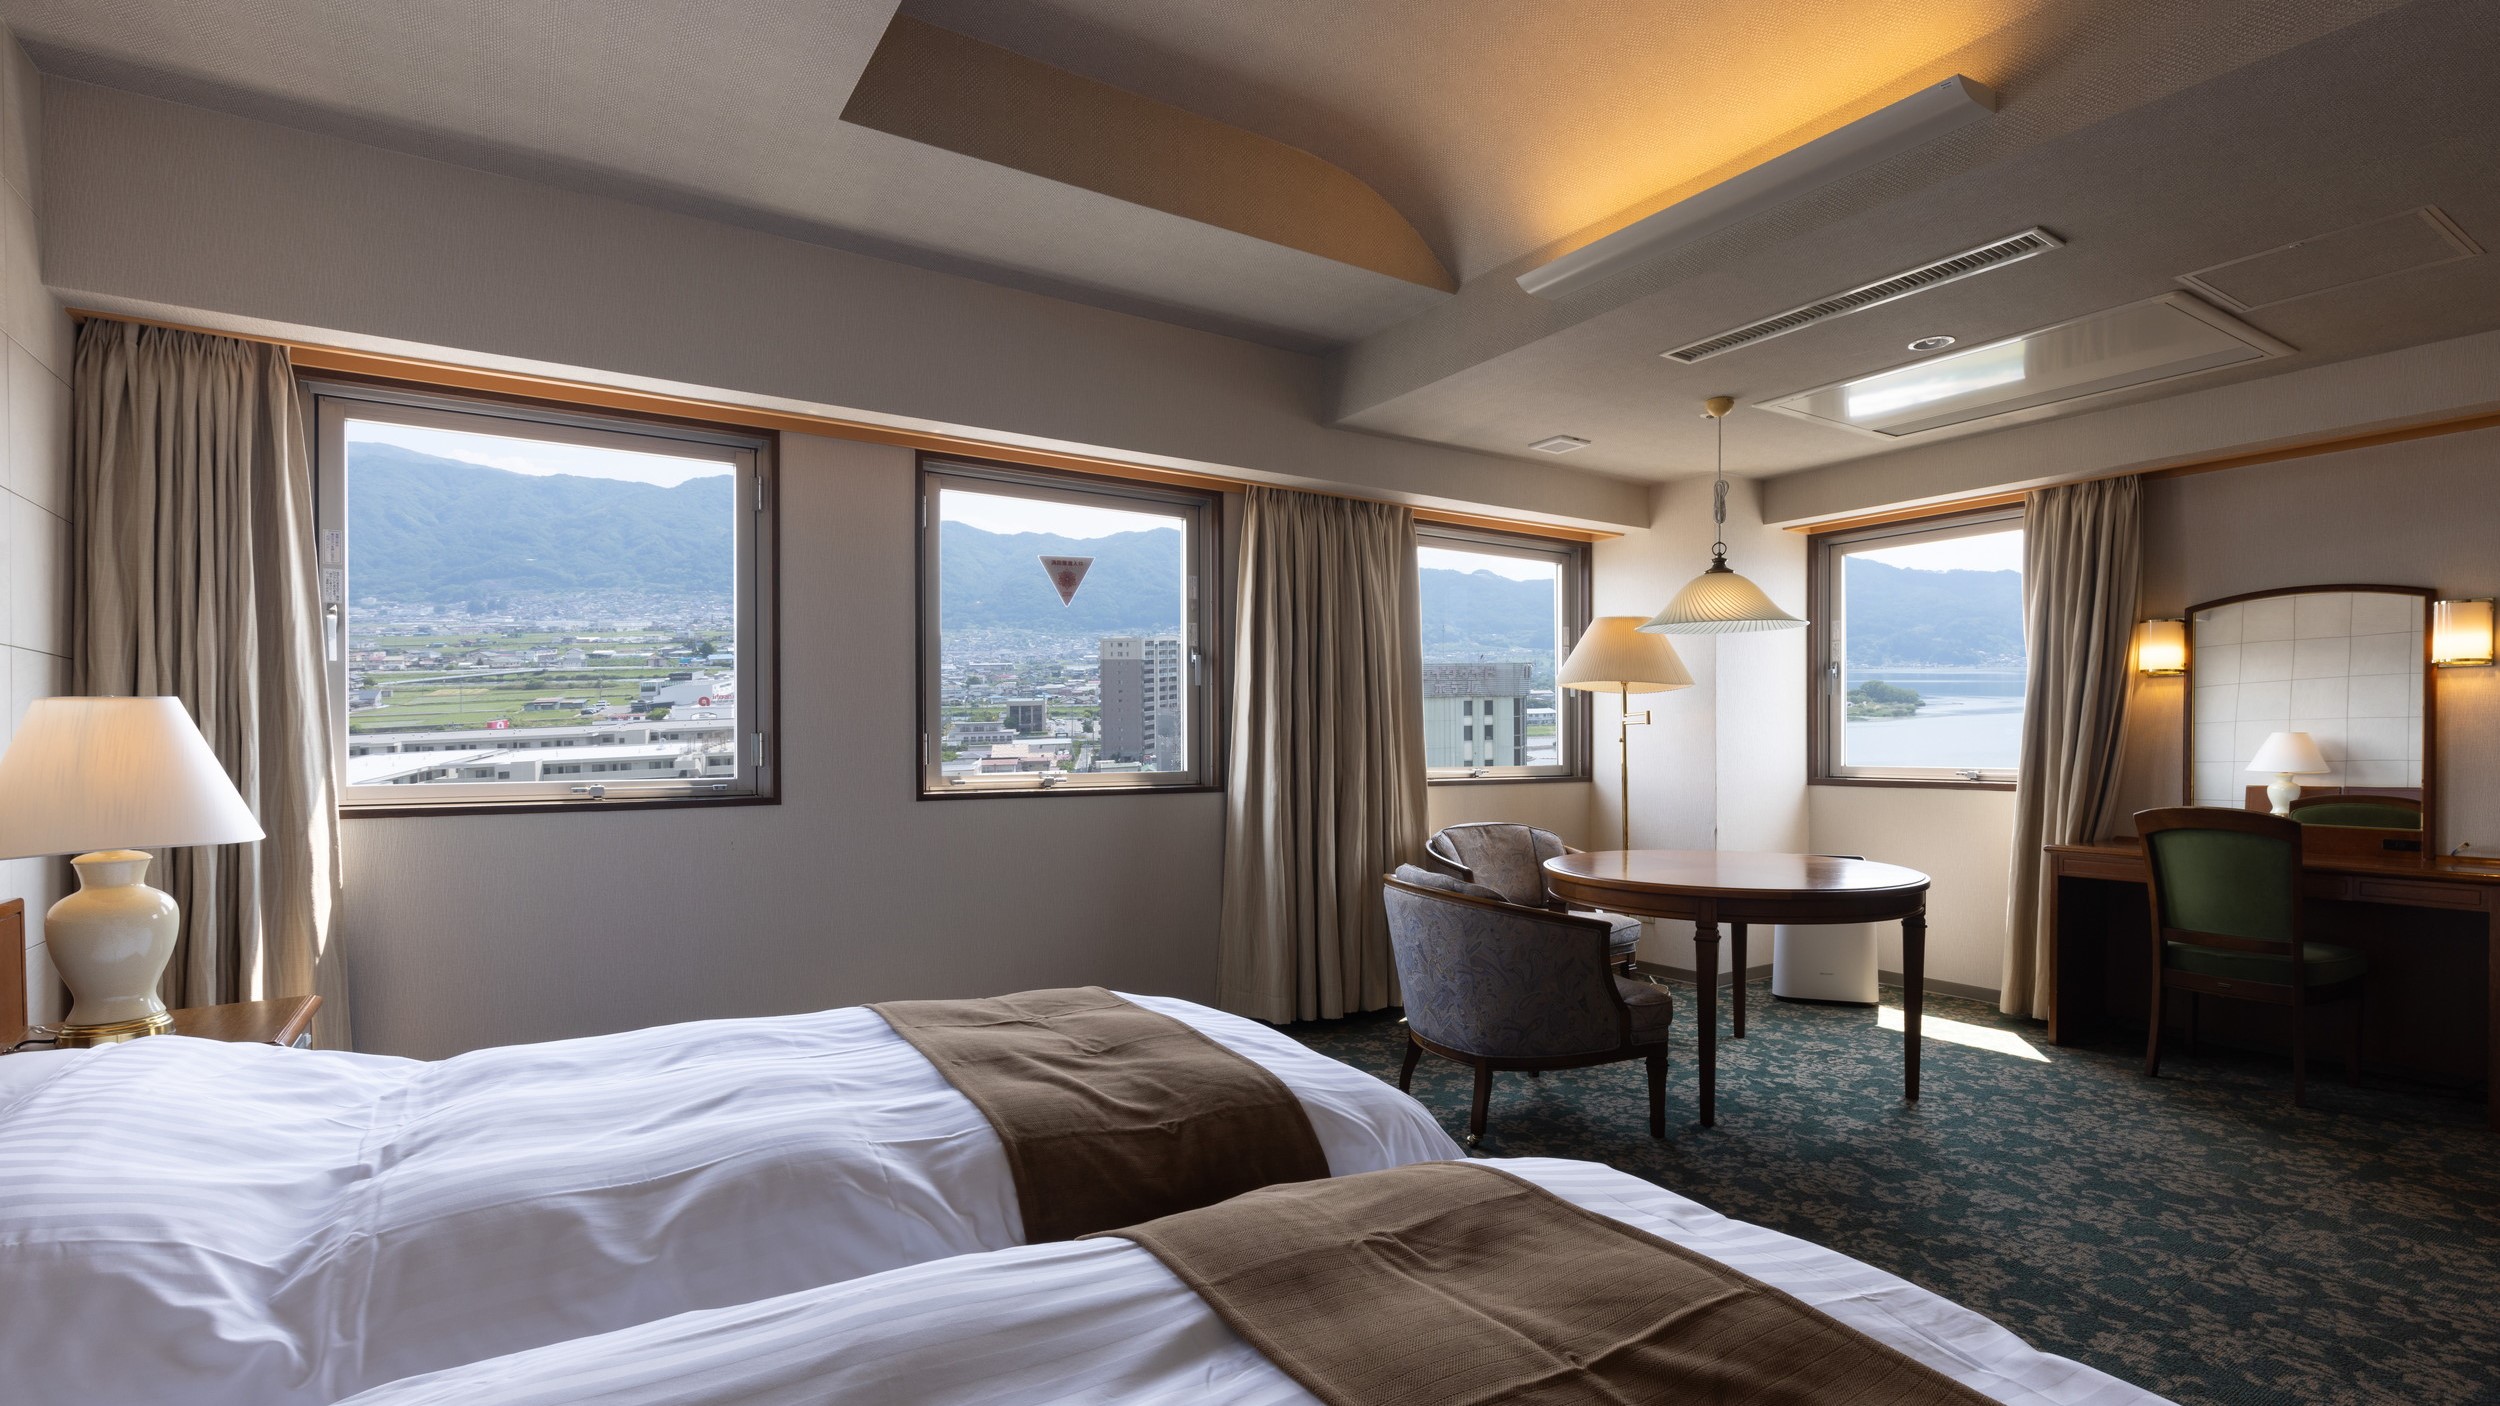 モデレートツイン【本館】40㎡の広めのツイン、眺望は湖から高島城や富士山と広く楽しむことができる。